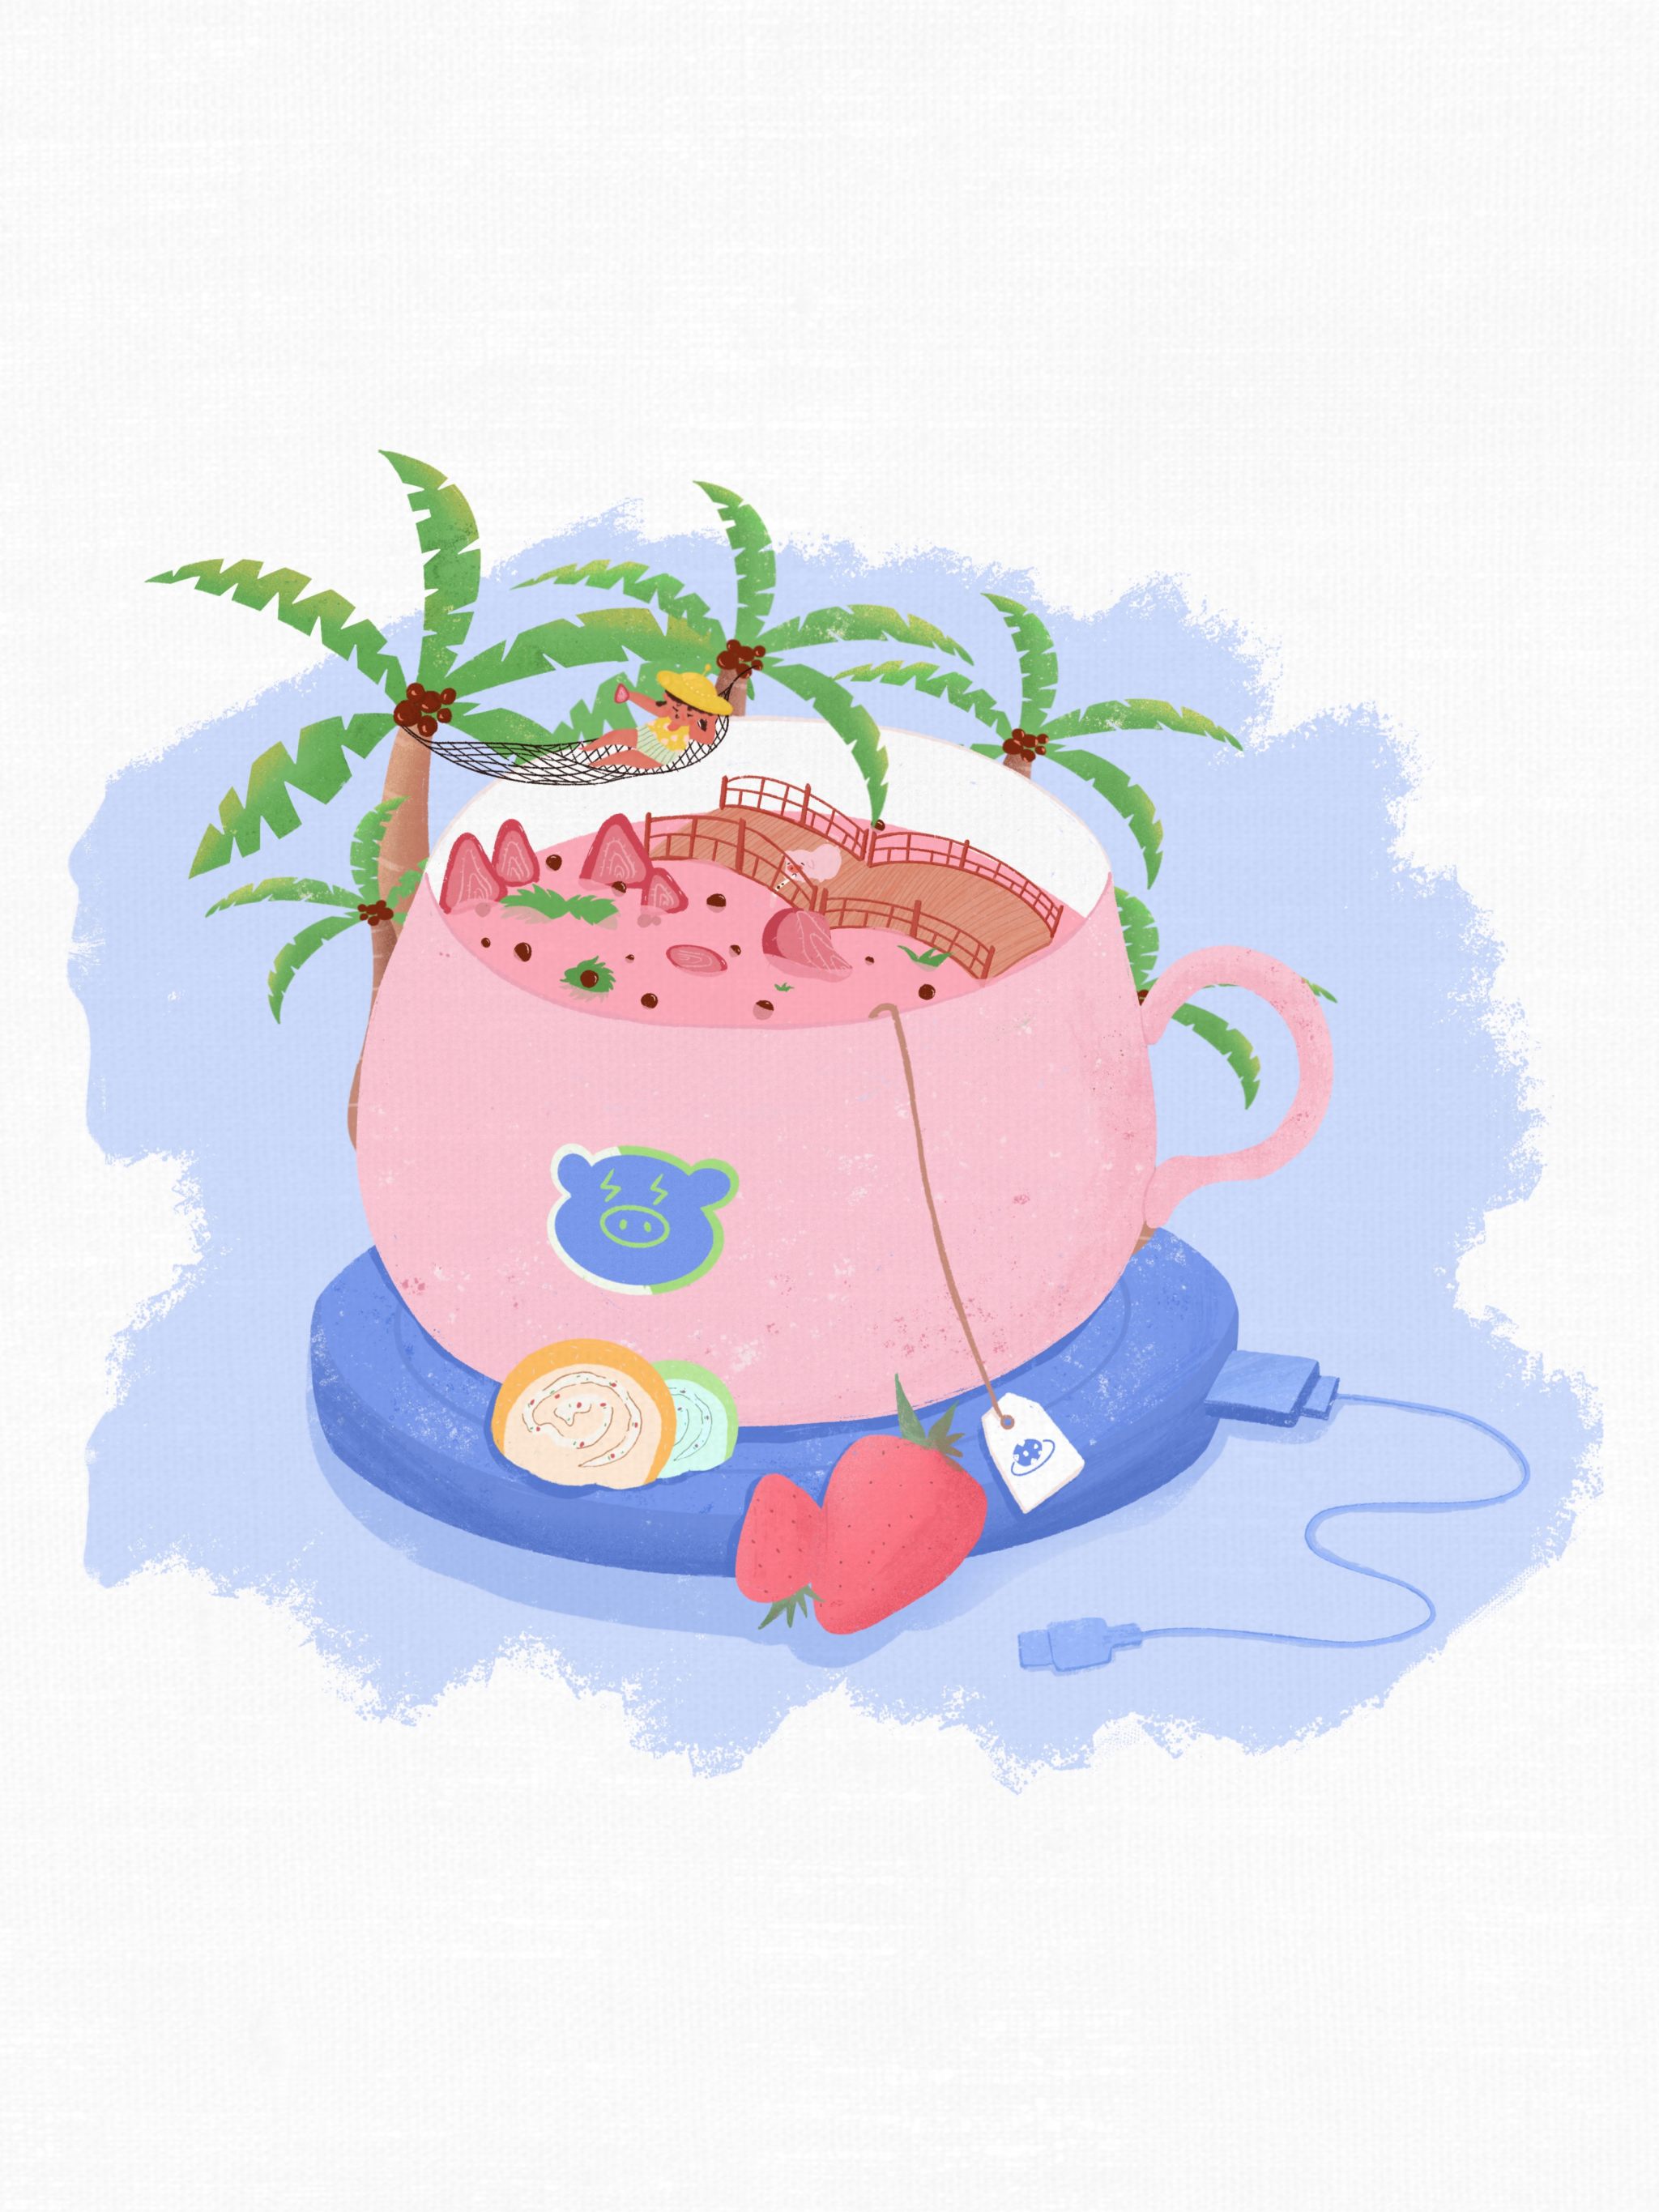 创意水果草莓味奶茶夏天冷饮插画